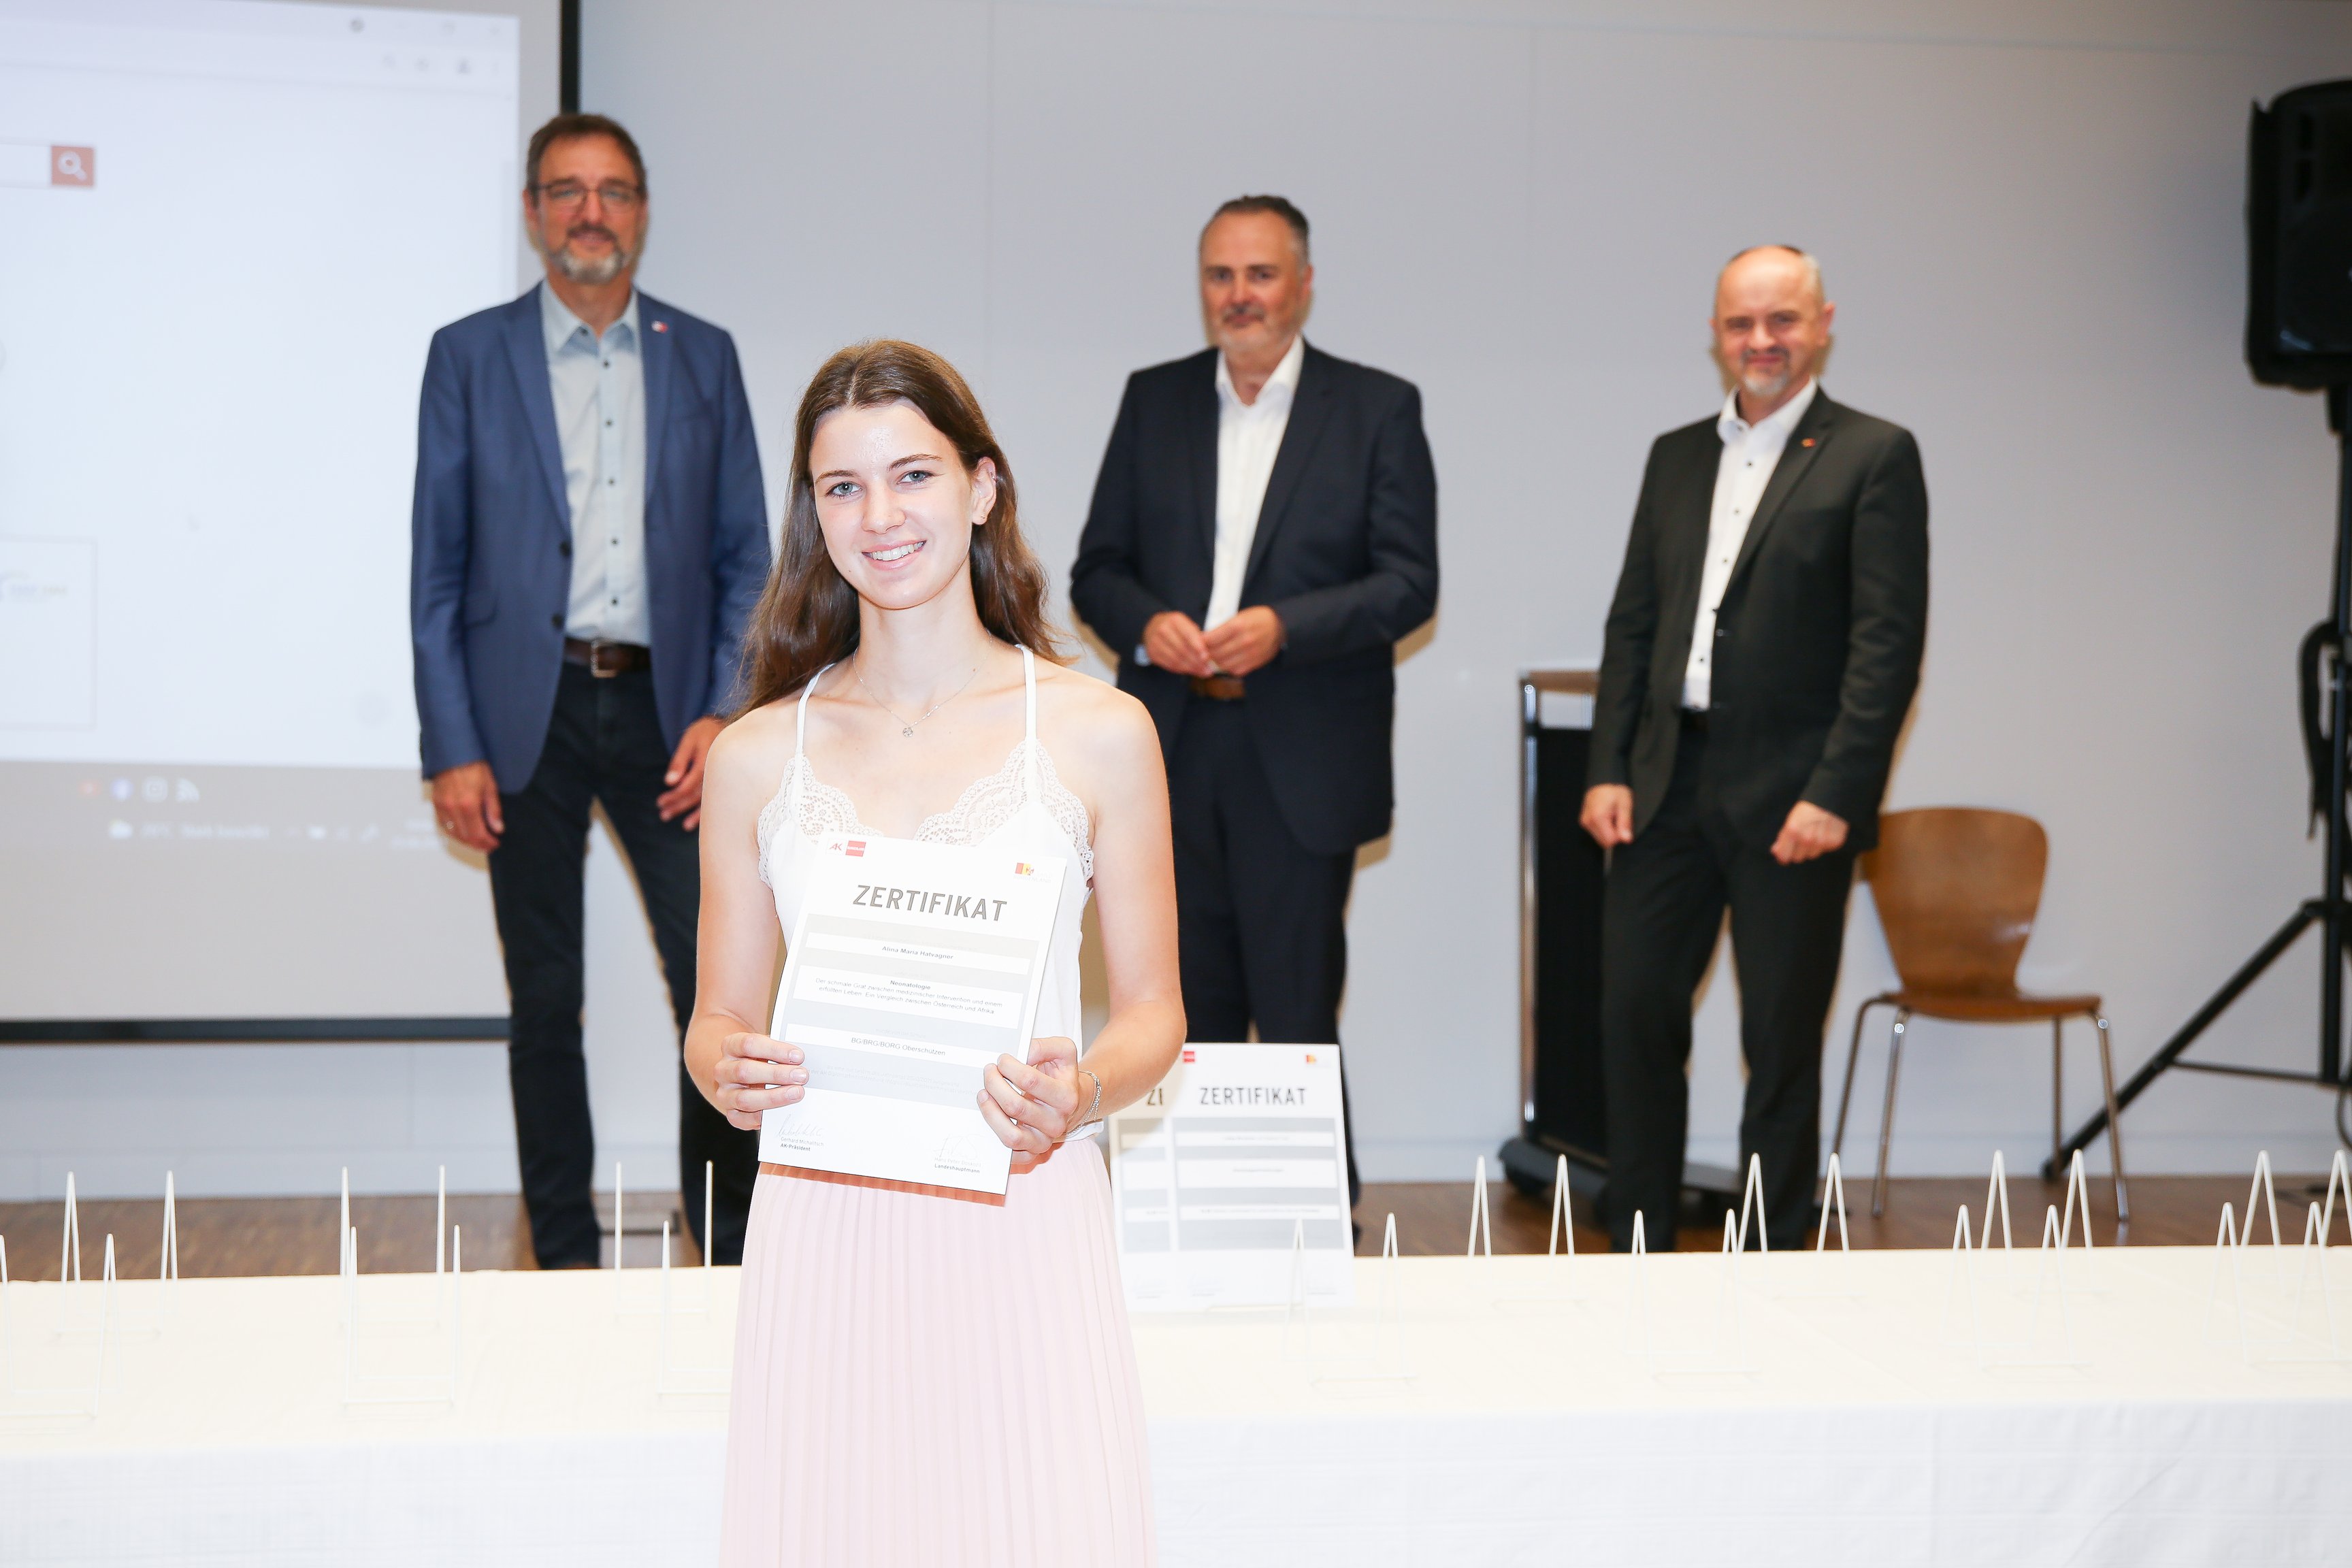 Schülerin der Schule "GYM Oberschützen" erhält Zertifikat für ihre schriftliche Arbeit "Neonatologie - Der schmale Grat zwischen medizinischer Intervention und einem erfüllten Leben".